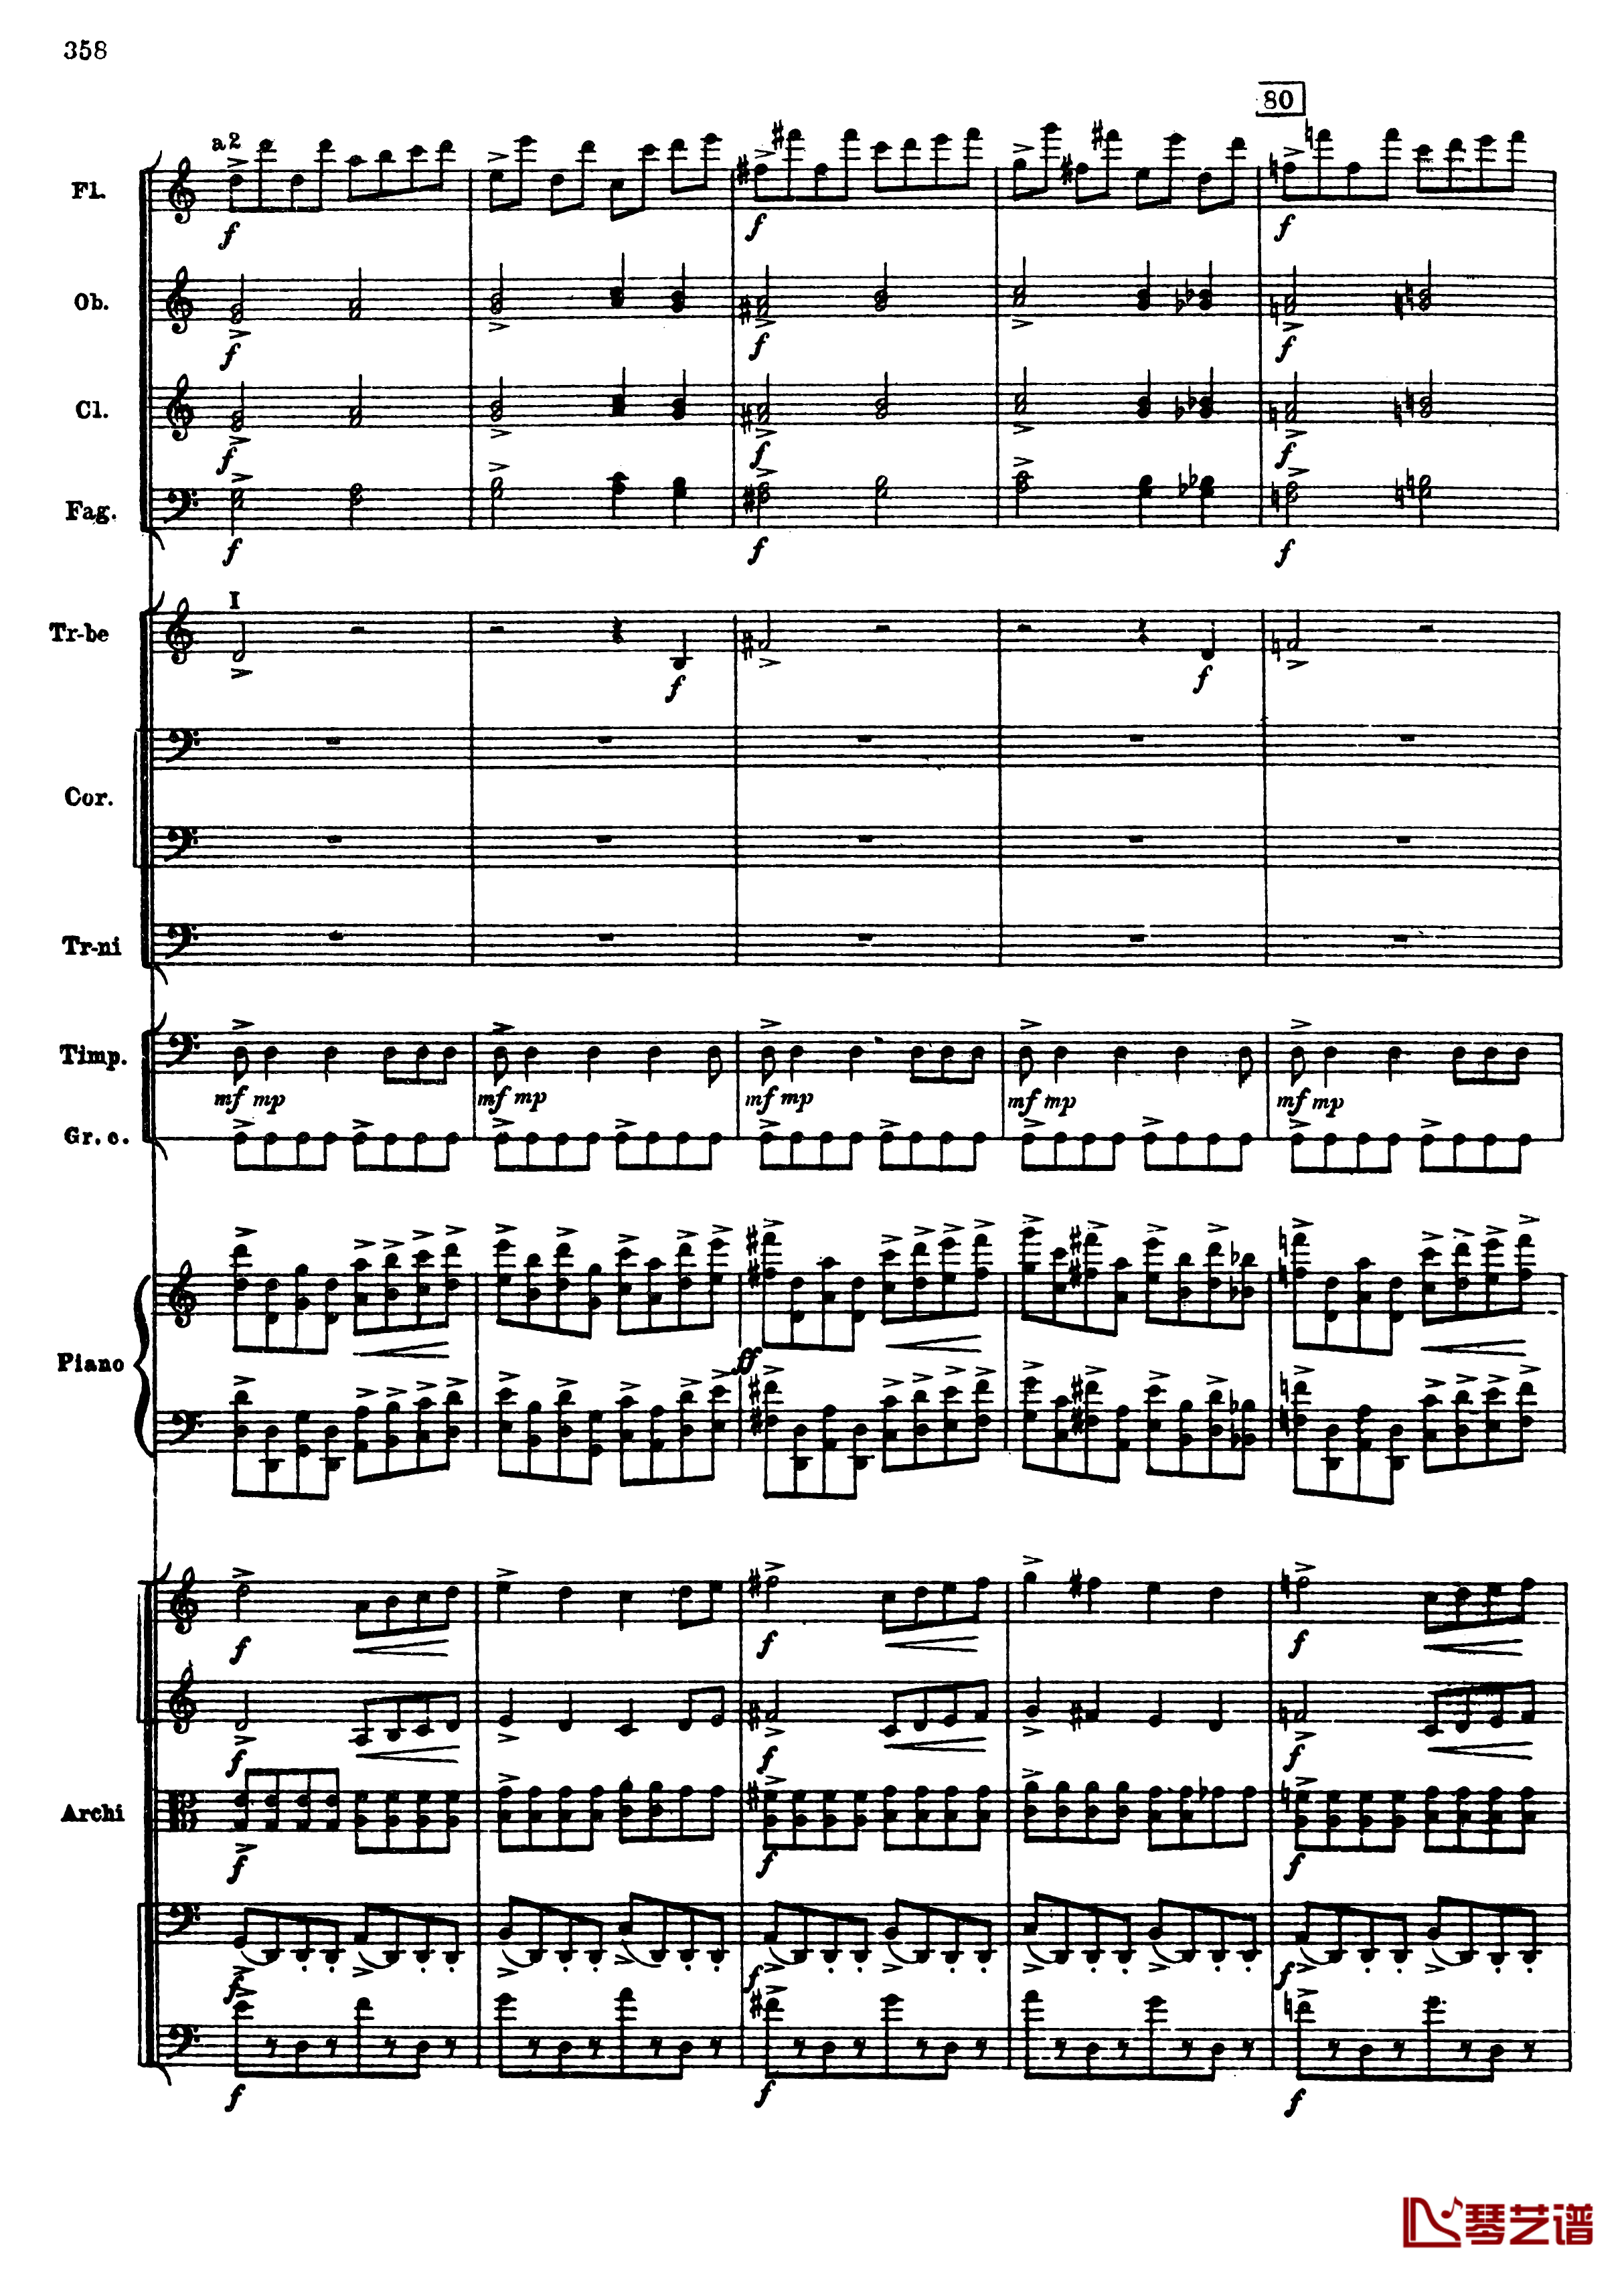 普罗科菲耶夫第三钢琴协奏曲钢琴谱-总谱-普罗科非耶夫90